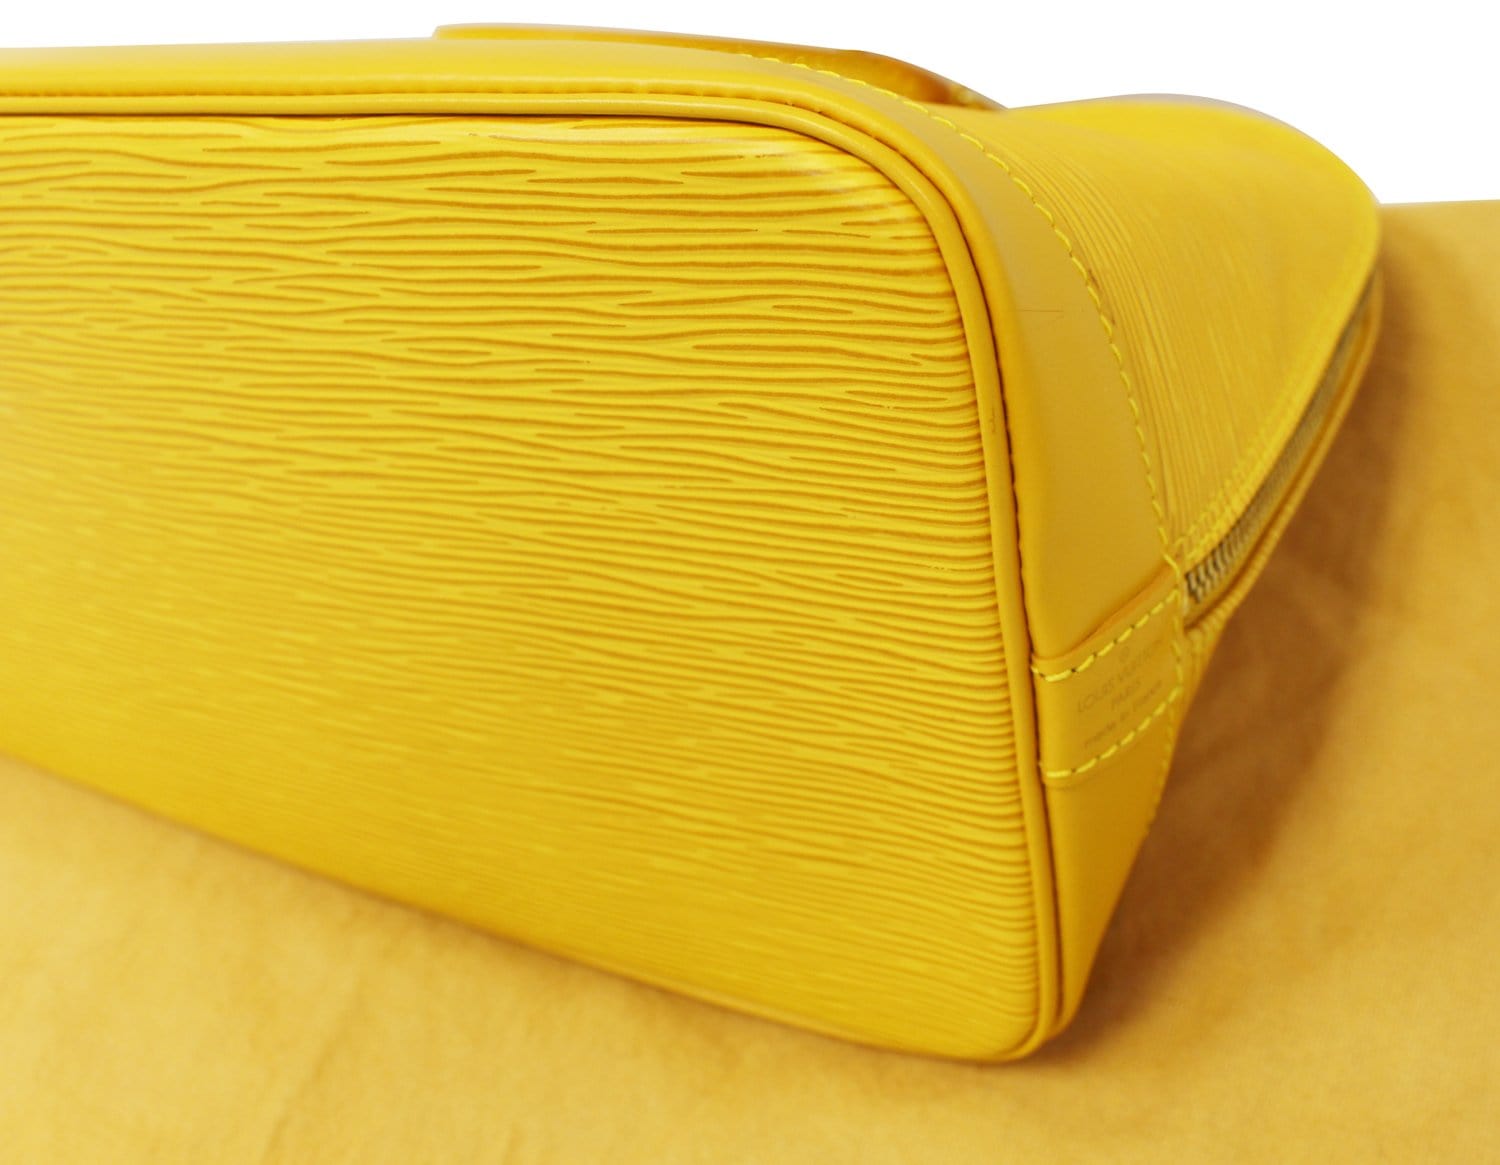 Alma PM Epi Leather - Handbags, LOUIS VUITTON ®